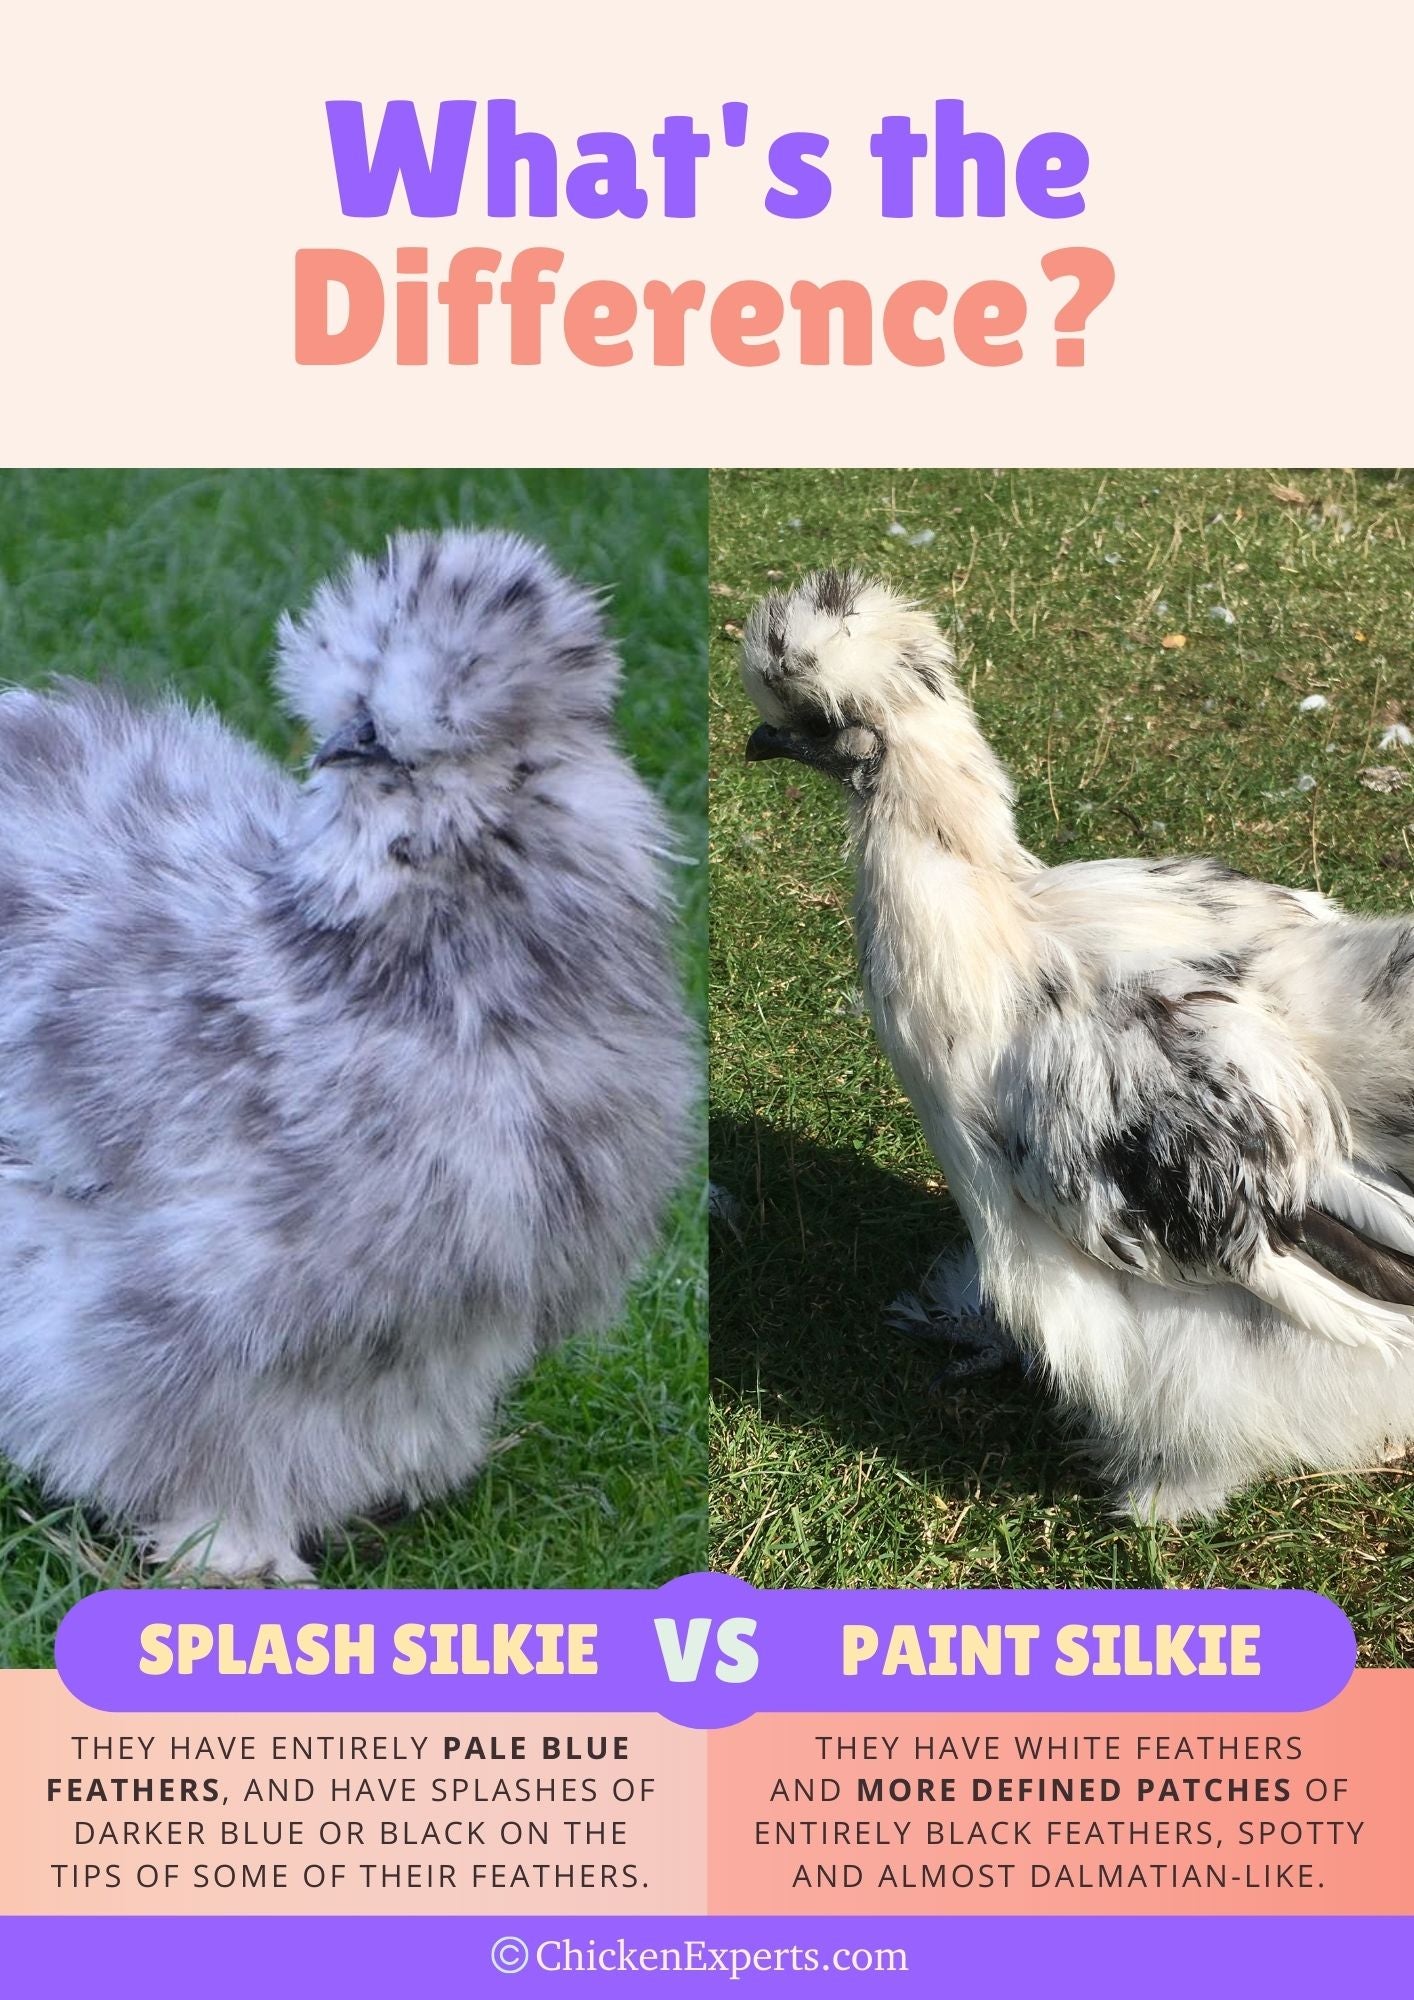 splash silkie versus paint silkie